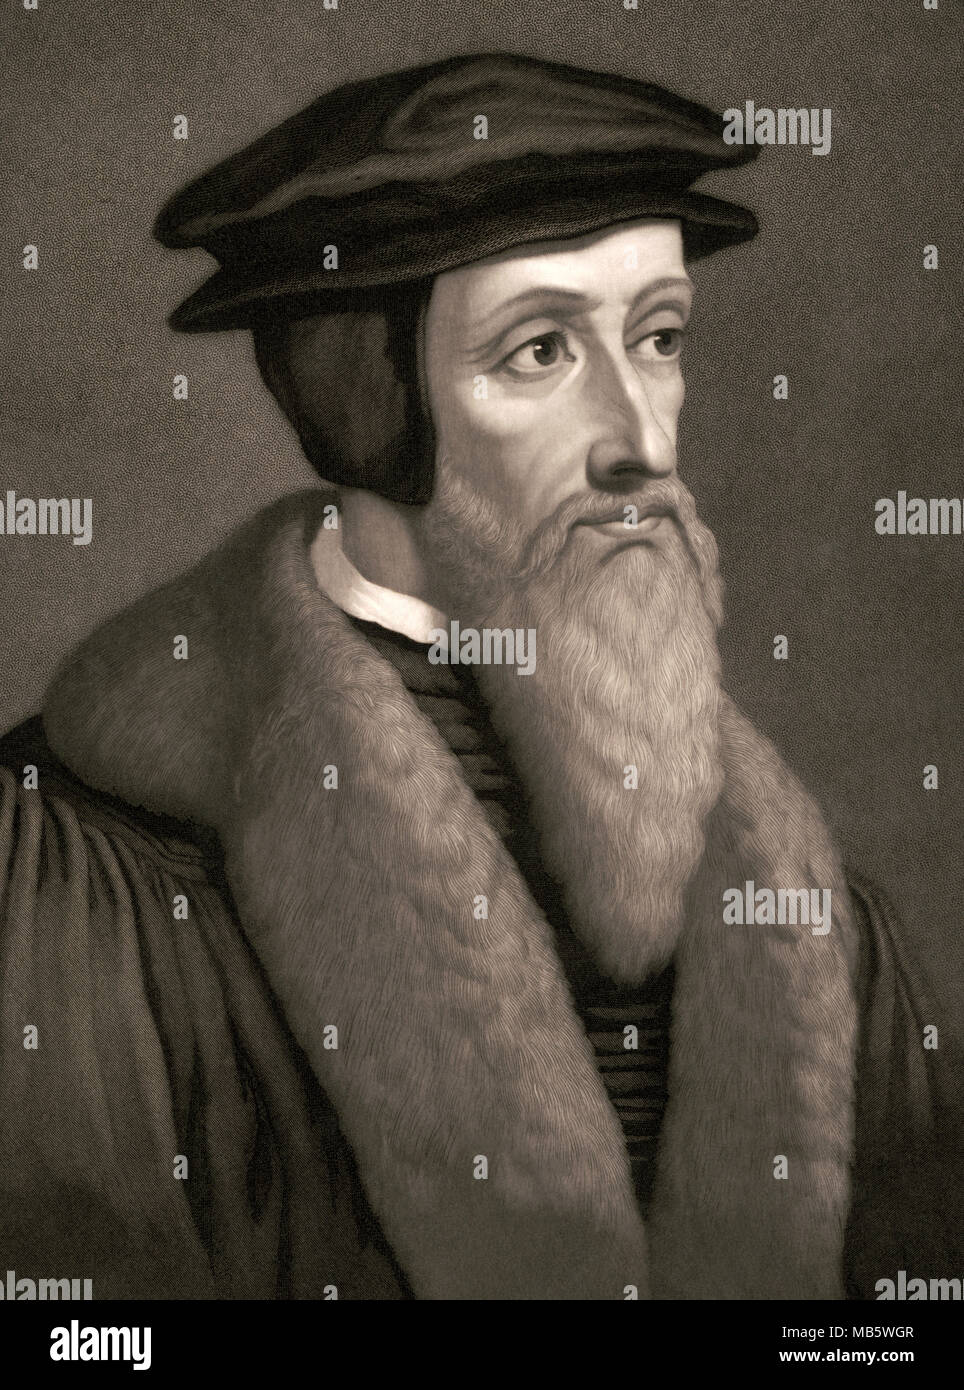 Johannes Calvin (1509 - 1564) war ein französischer evangelischer Theologe, Pfarrer und Reformator in Genf in der Schweiz während der protestantischen Reformation. Seine Sicht der christlichen Theologie, später als Calvinismus bekannt geworden. Stockfoto